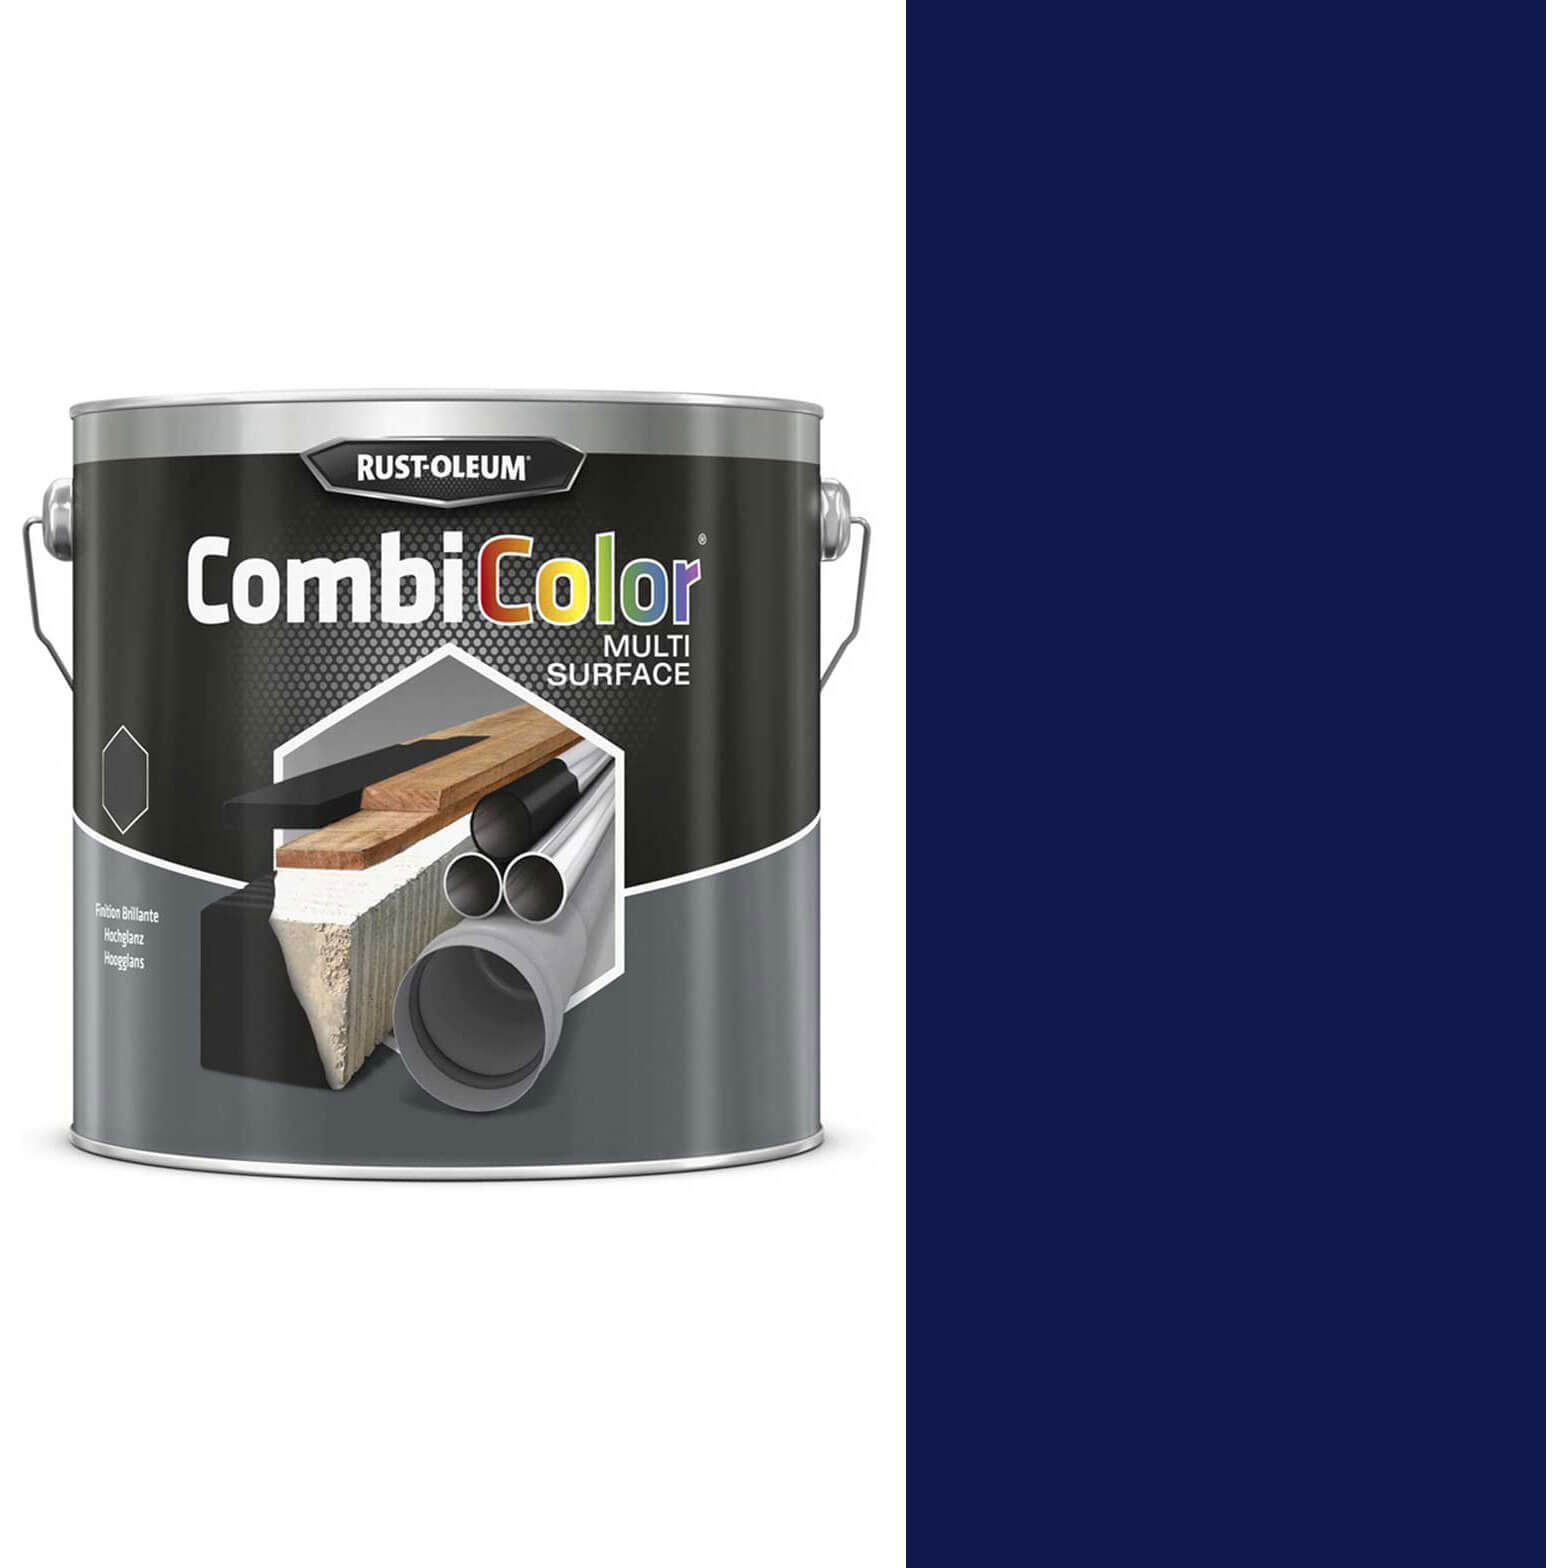 Image of Rust Oleum CombiColor Multi Surface Paint Gentian Blue 2.5l